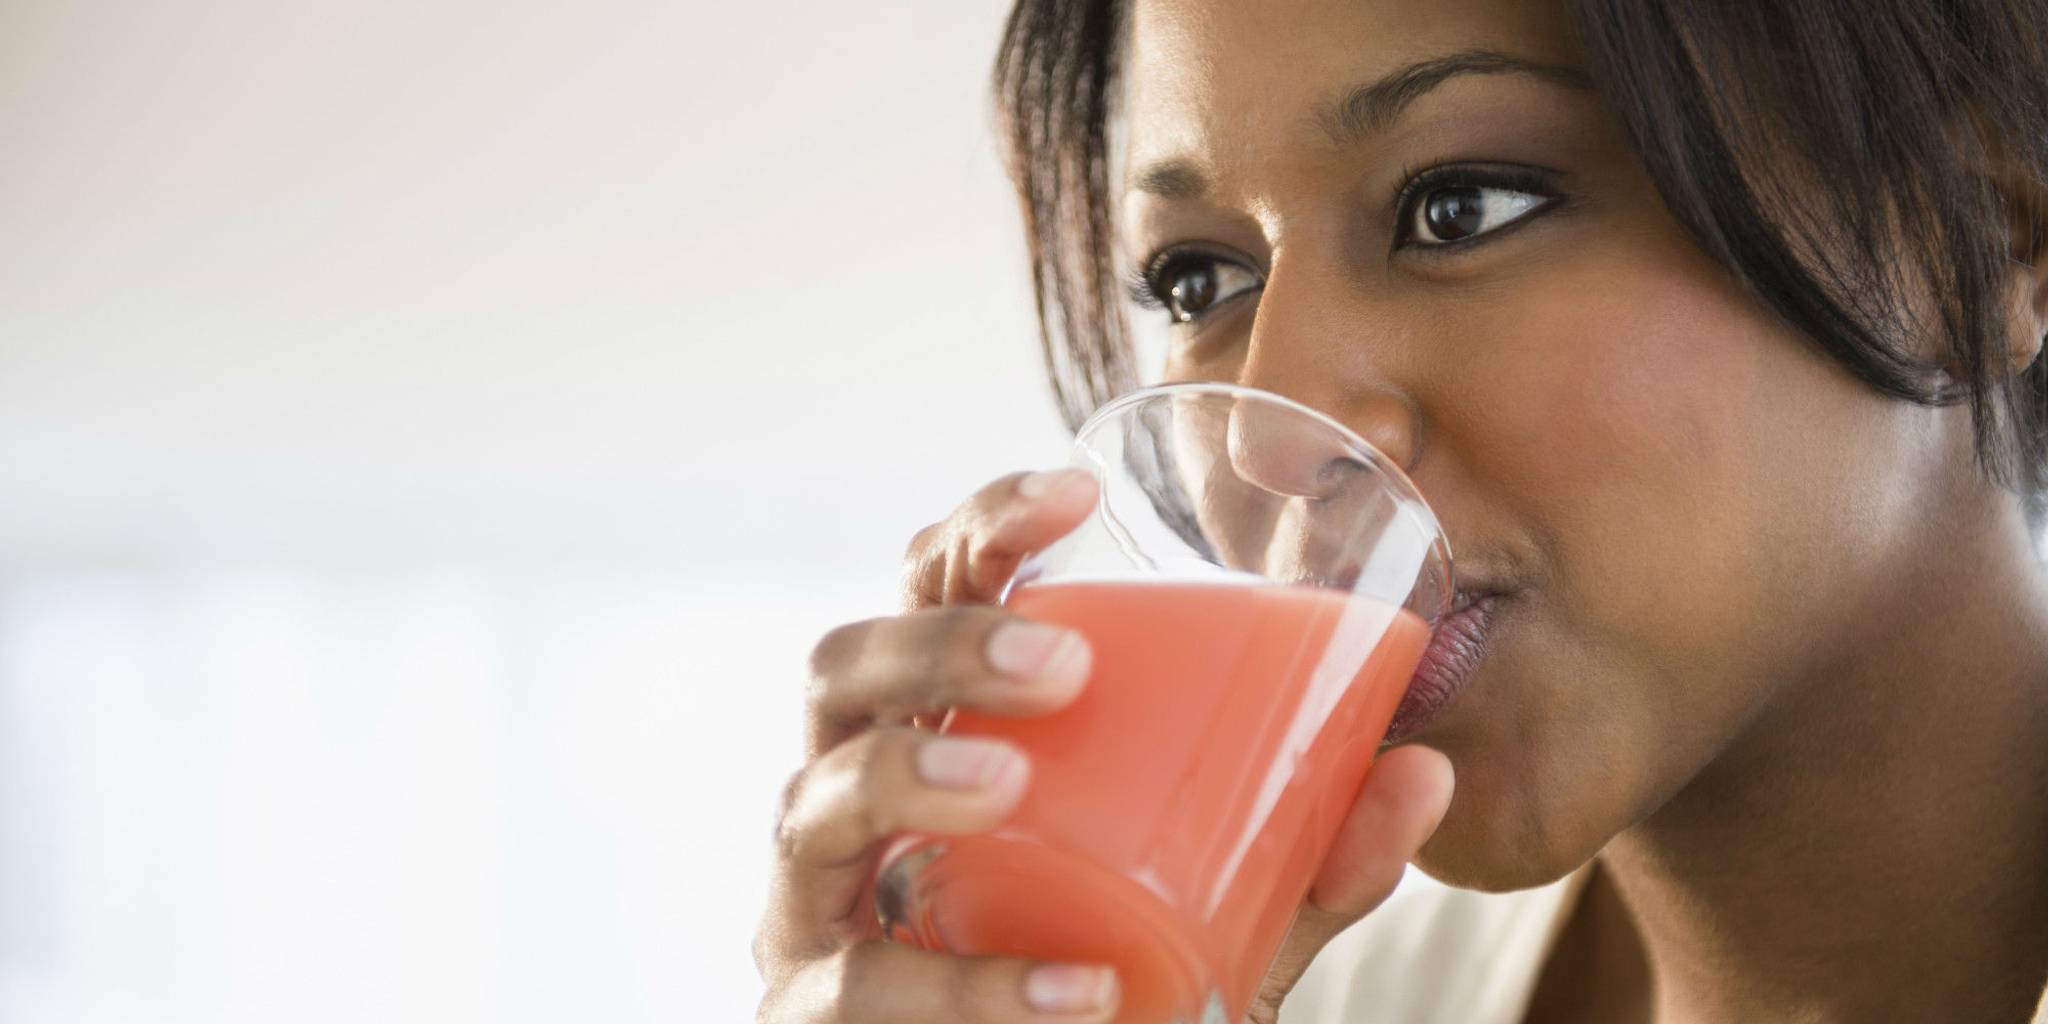 India develops a taste for branded juice